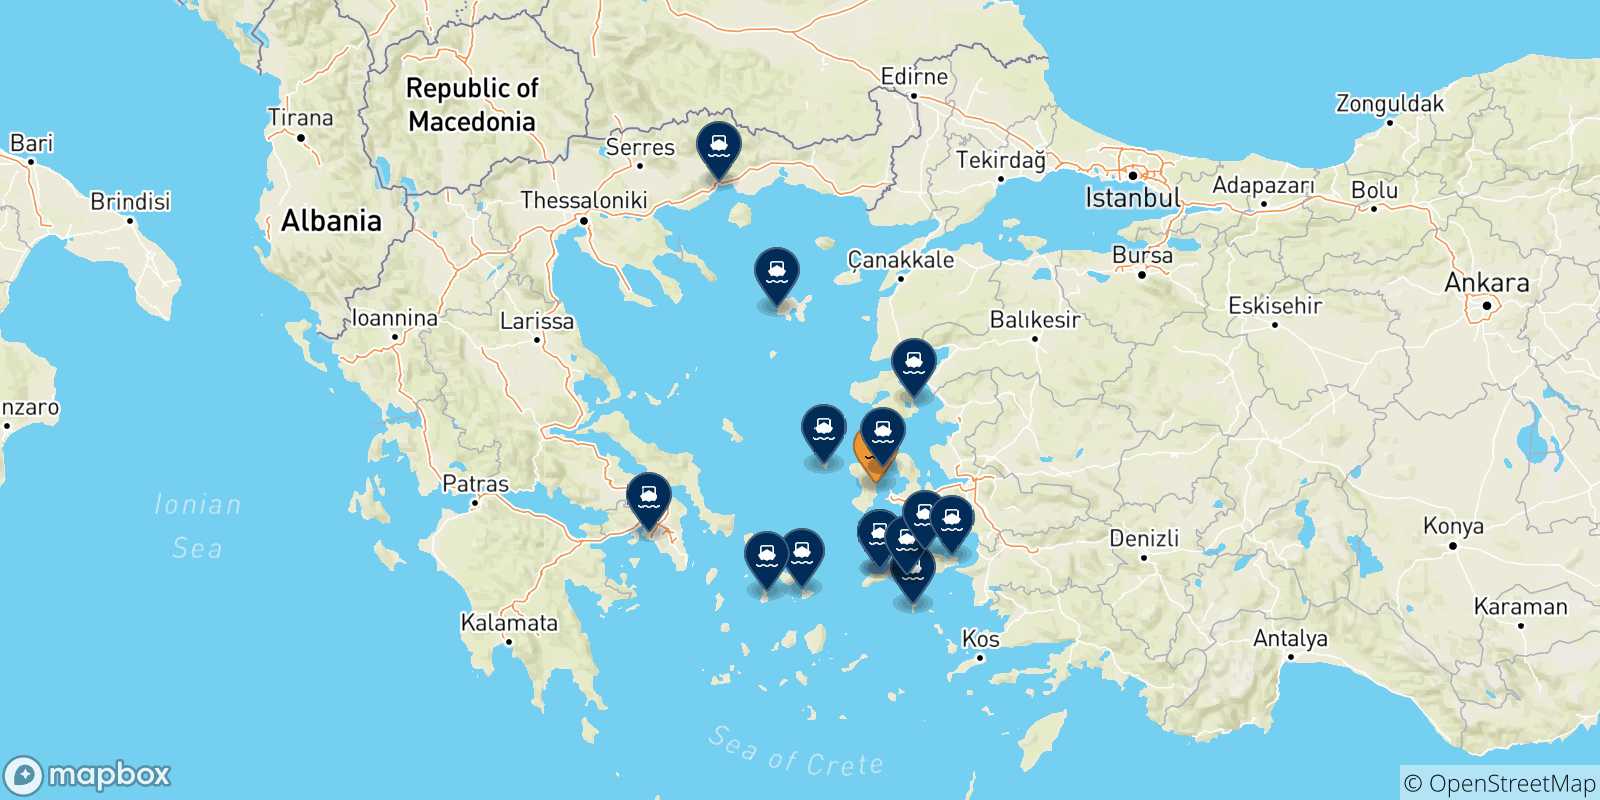 Mappa delle possibili rotte tra Chios e la Grecia